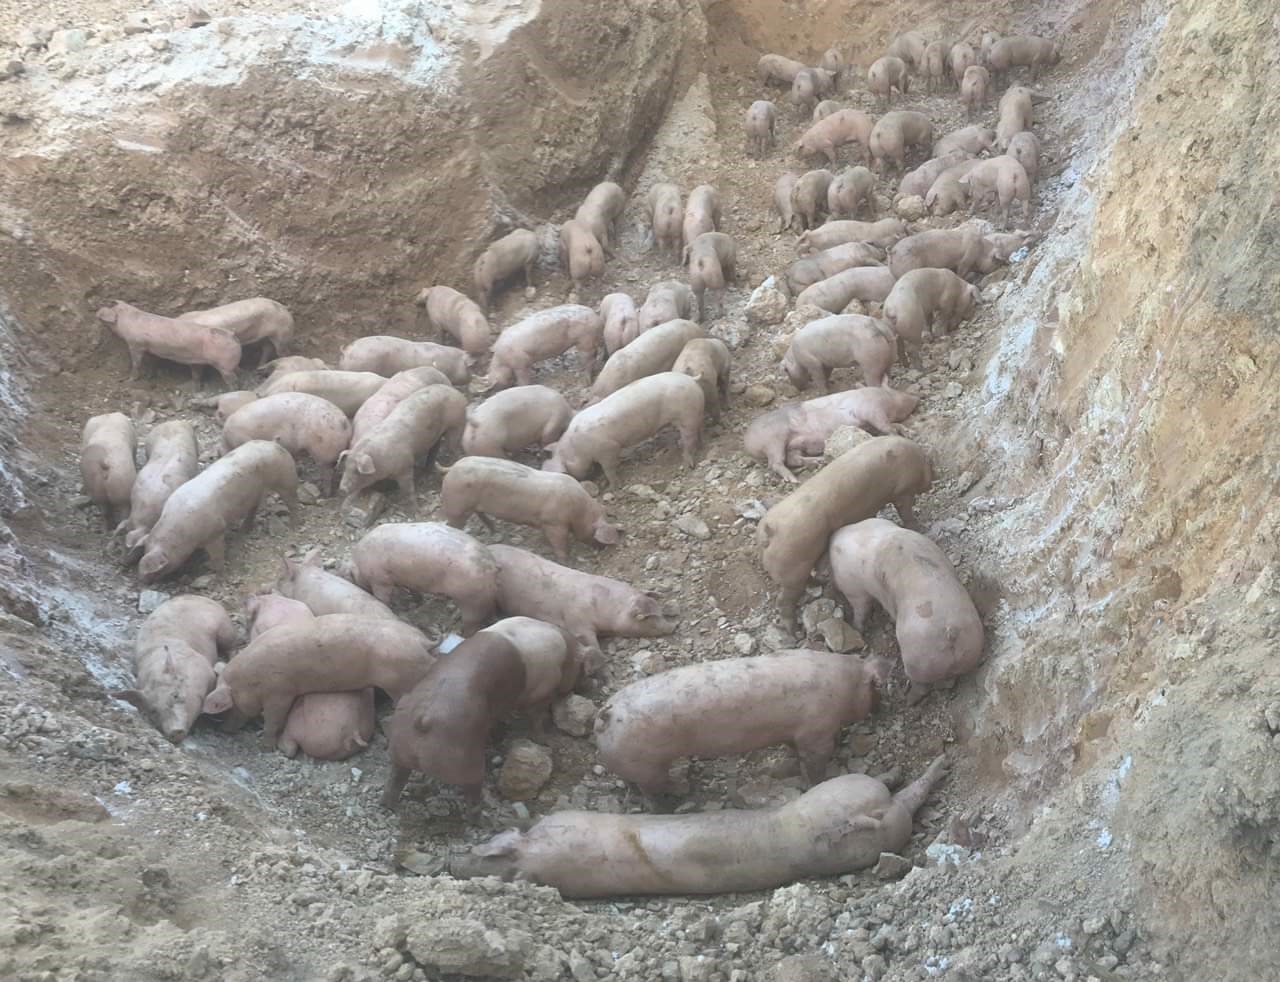 
Quảng Trị: Tiêu hủy gần 1.000 con lợn sống nhập khẩu từ Thái Lan bị dịch tả lợn châu Phi - Ảnh 1.